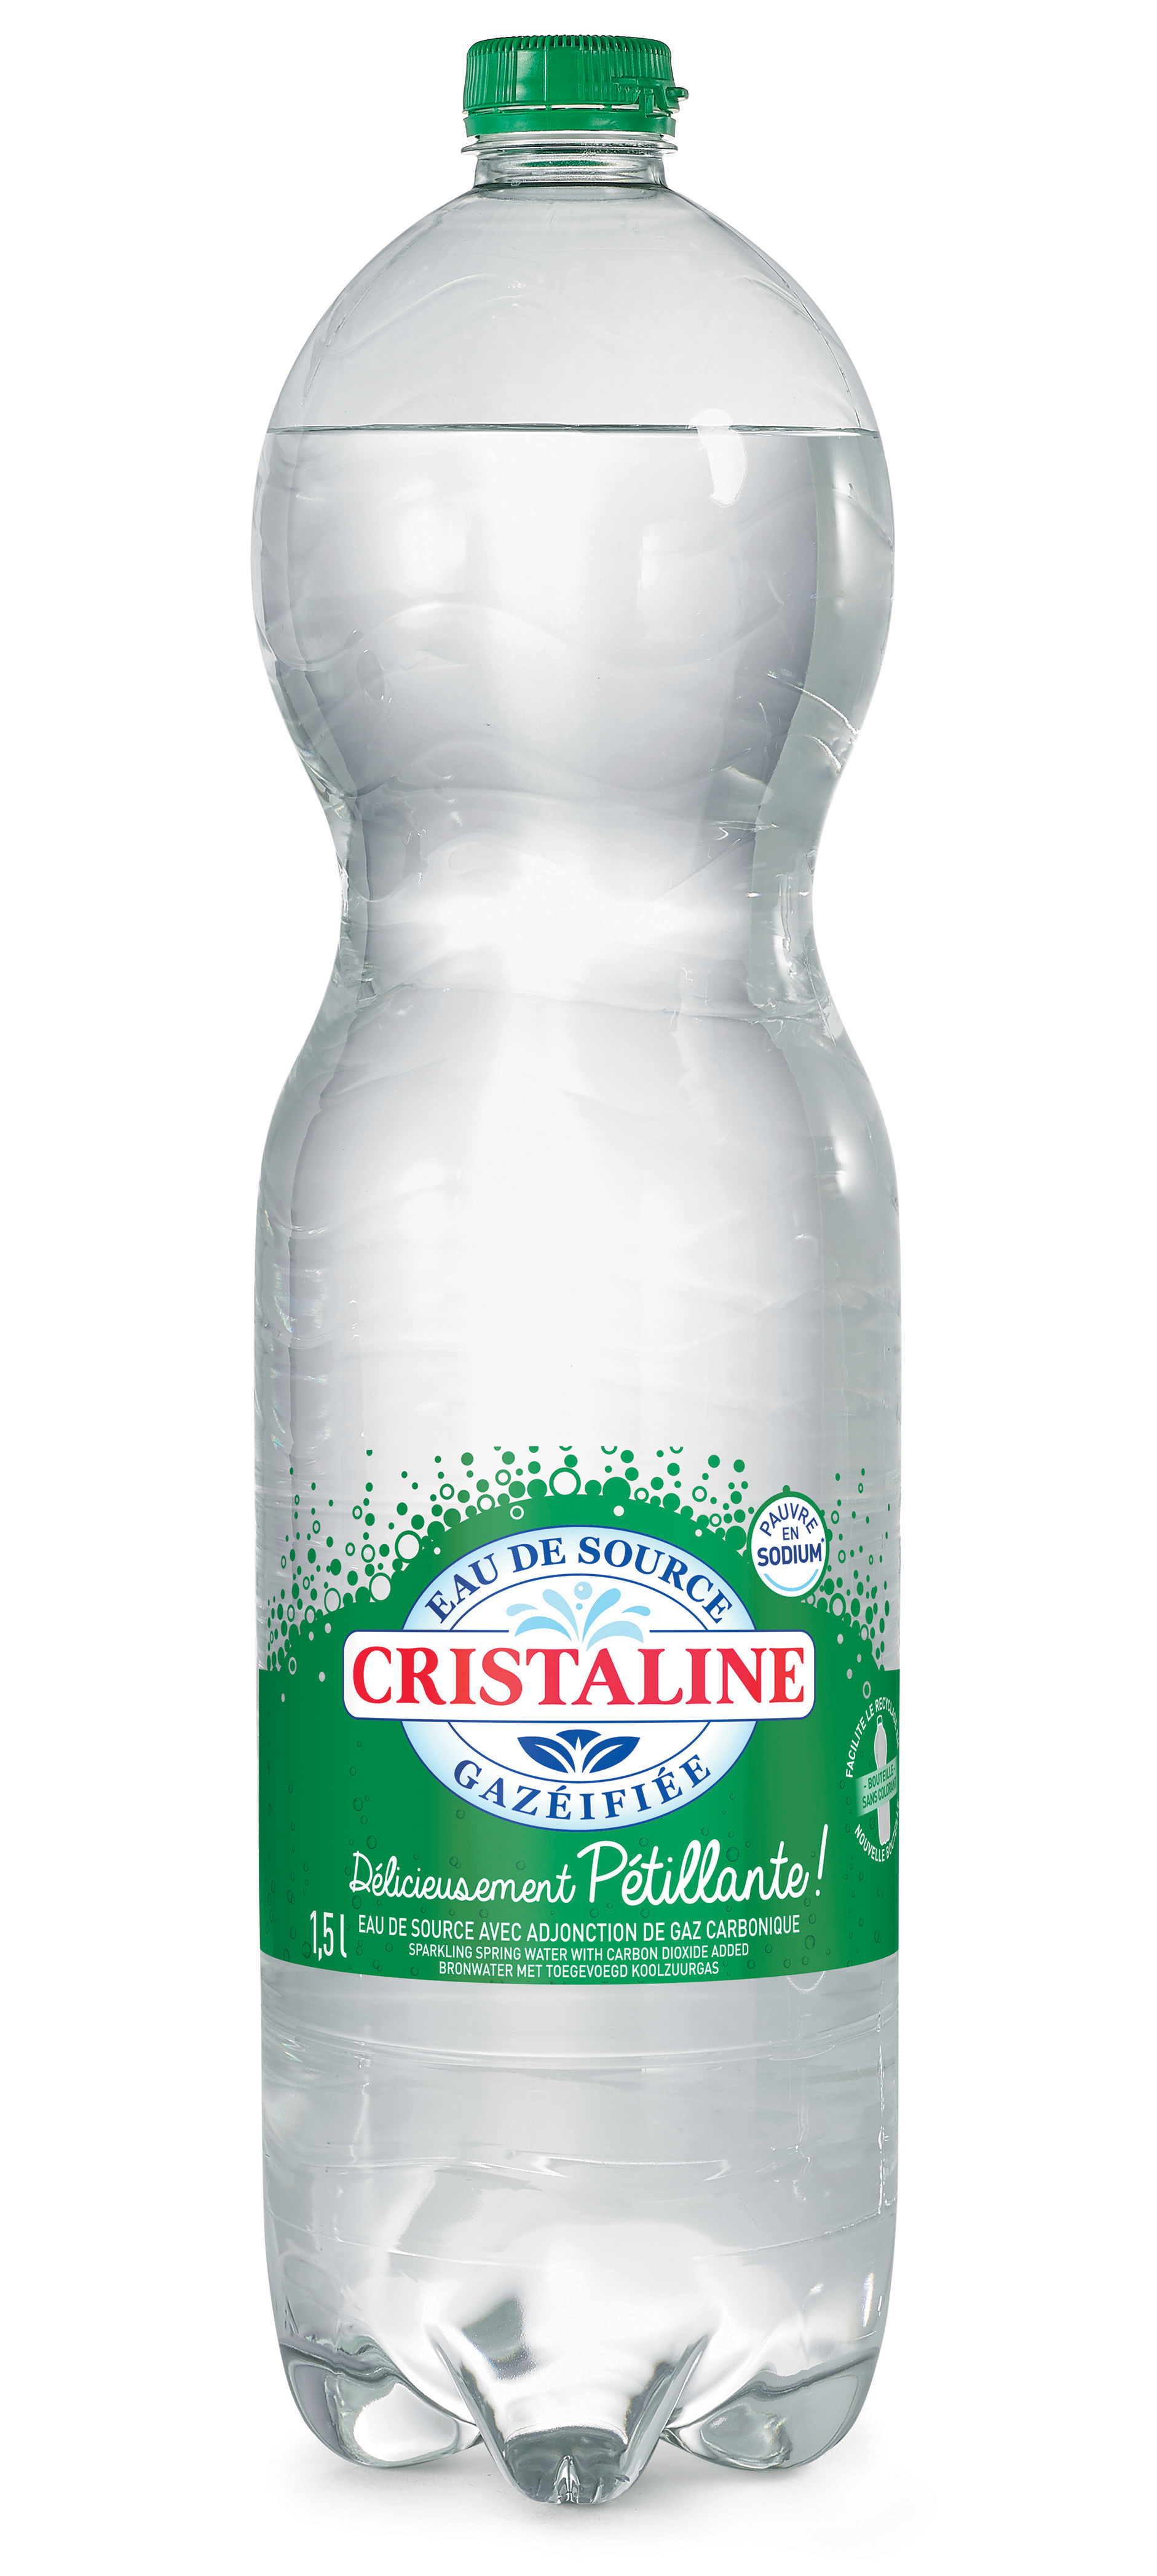 CRISTALINE GAZEUSE 1,5L #Bouteille plastique PET